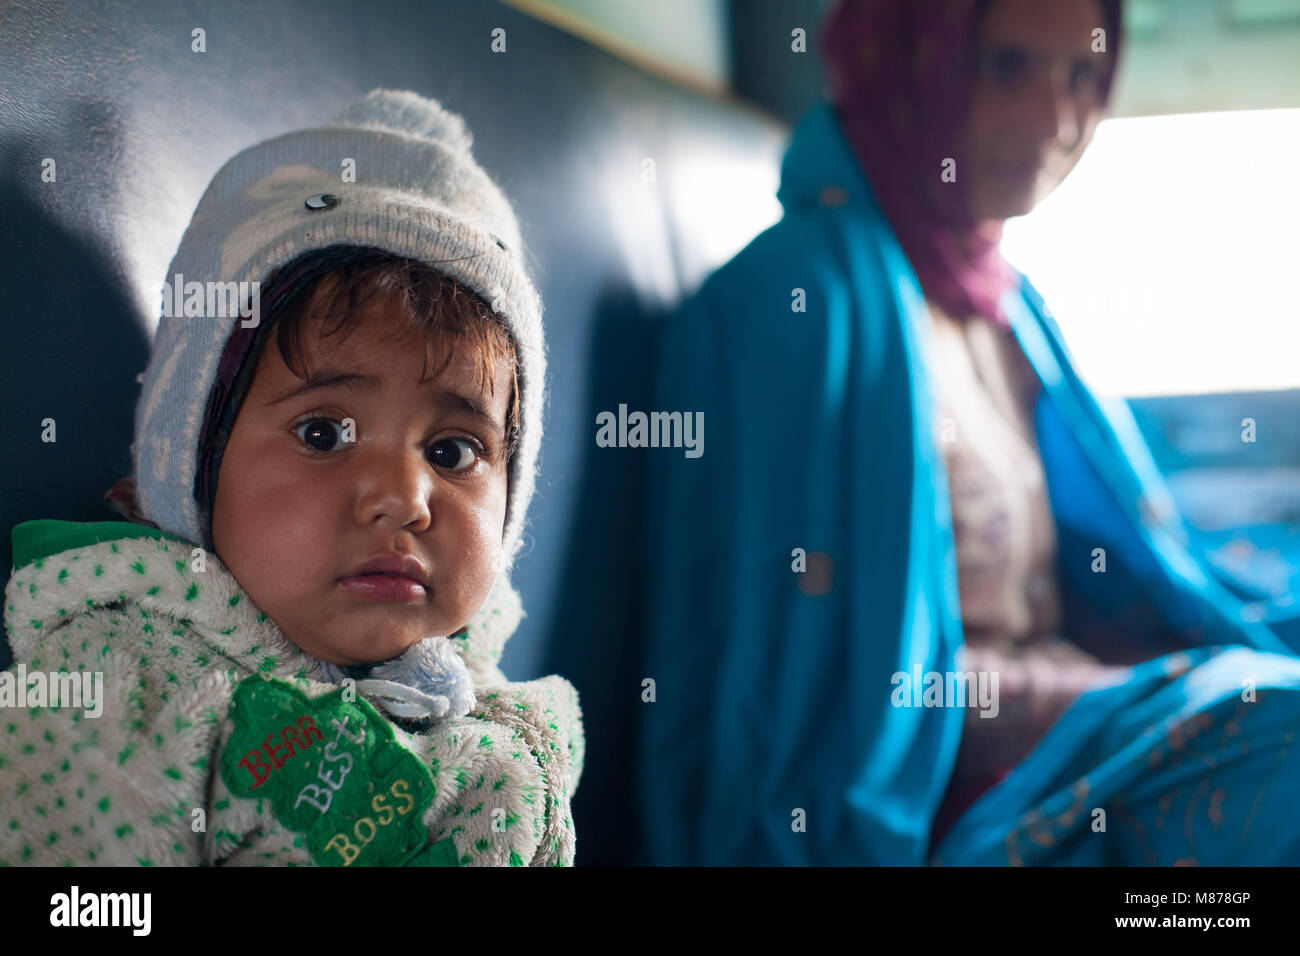 Un portrait d'une petite fille indienne avec mère assis à côté de la fenêtre. Femme est souriante, portant une écharpe châle bleu et violet. Le bébé est nous Banque D'Images